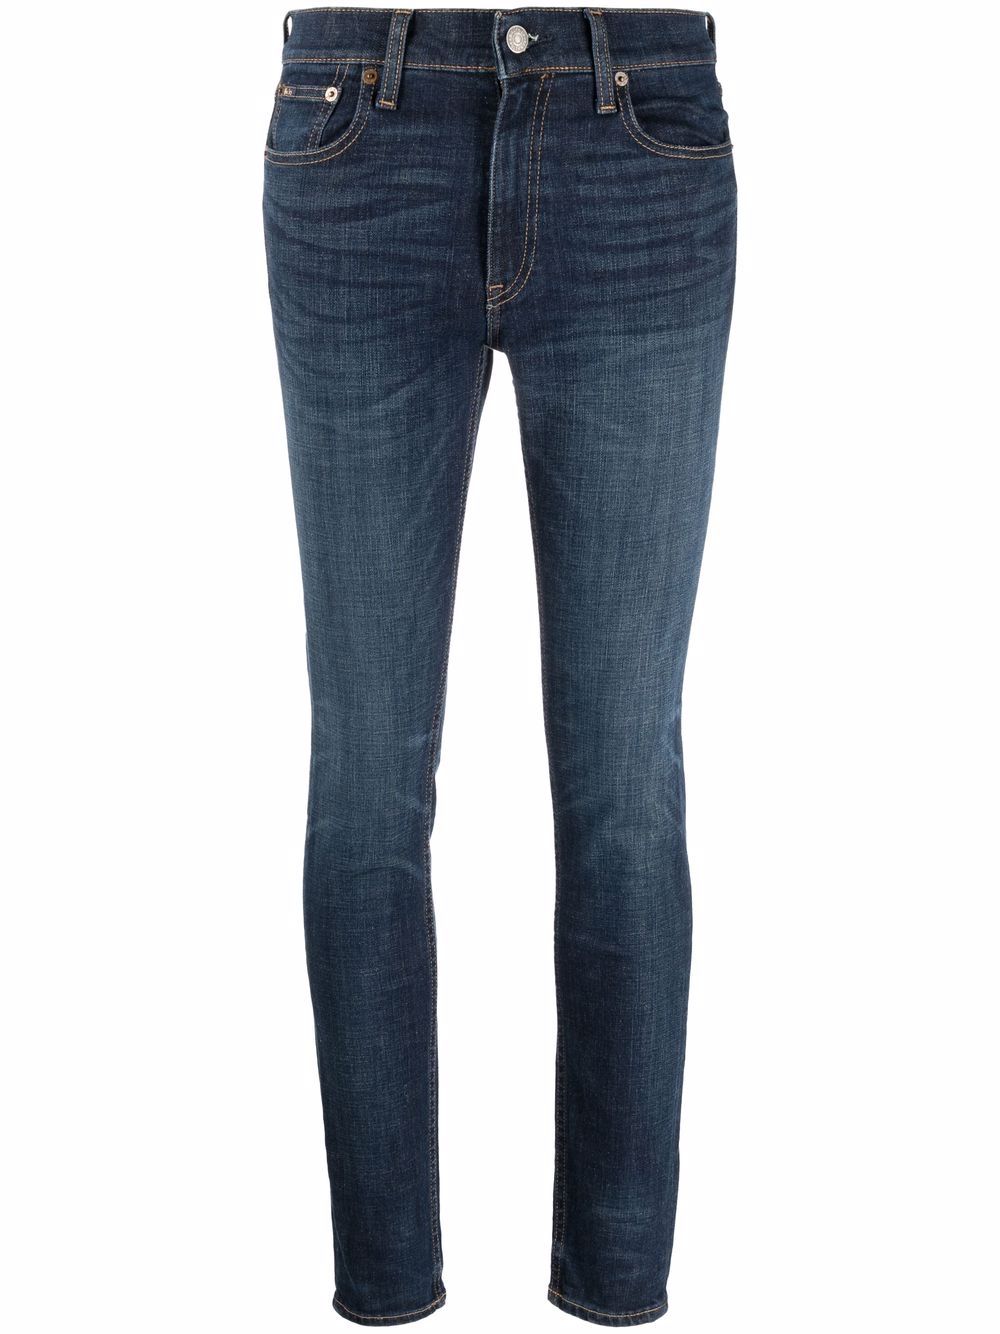 фото Polo ralph lauren джинсы скинни средней посадки